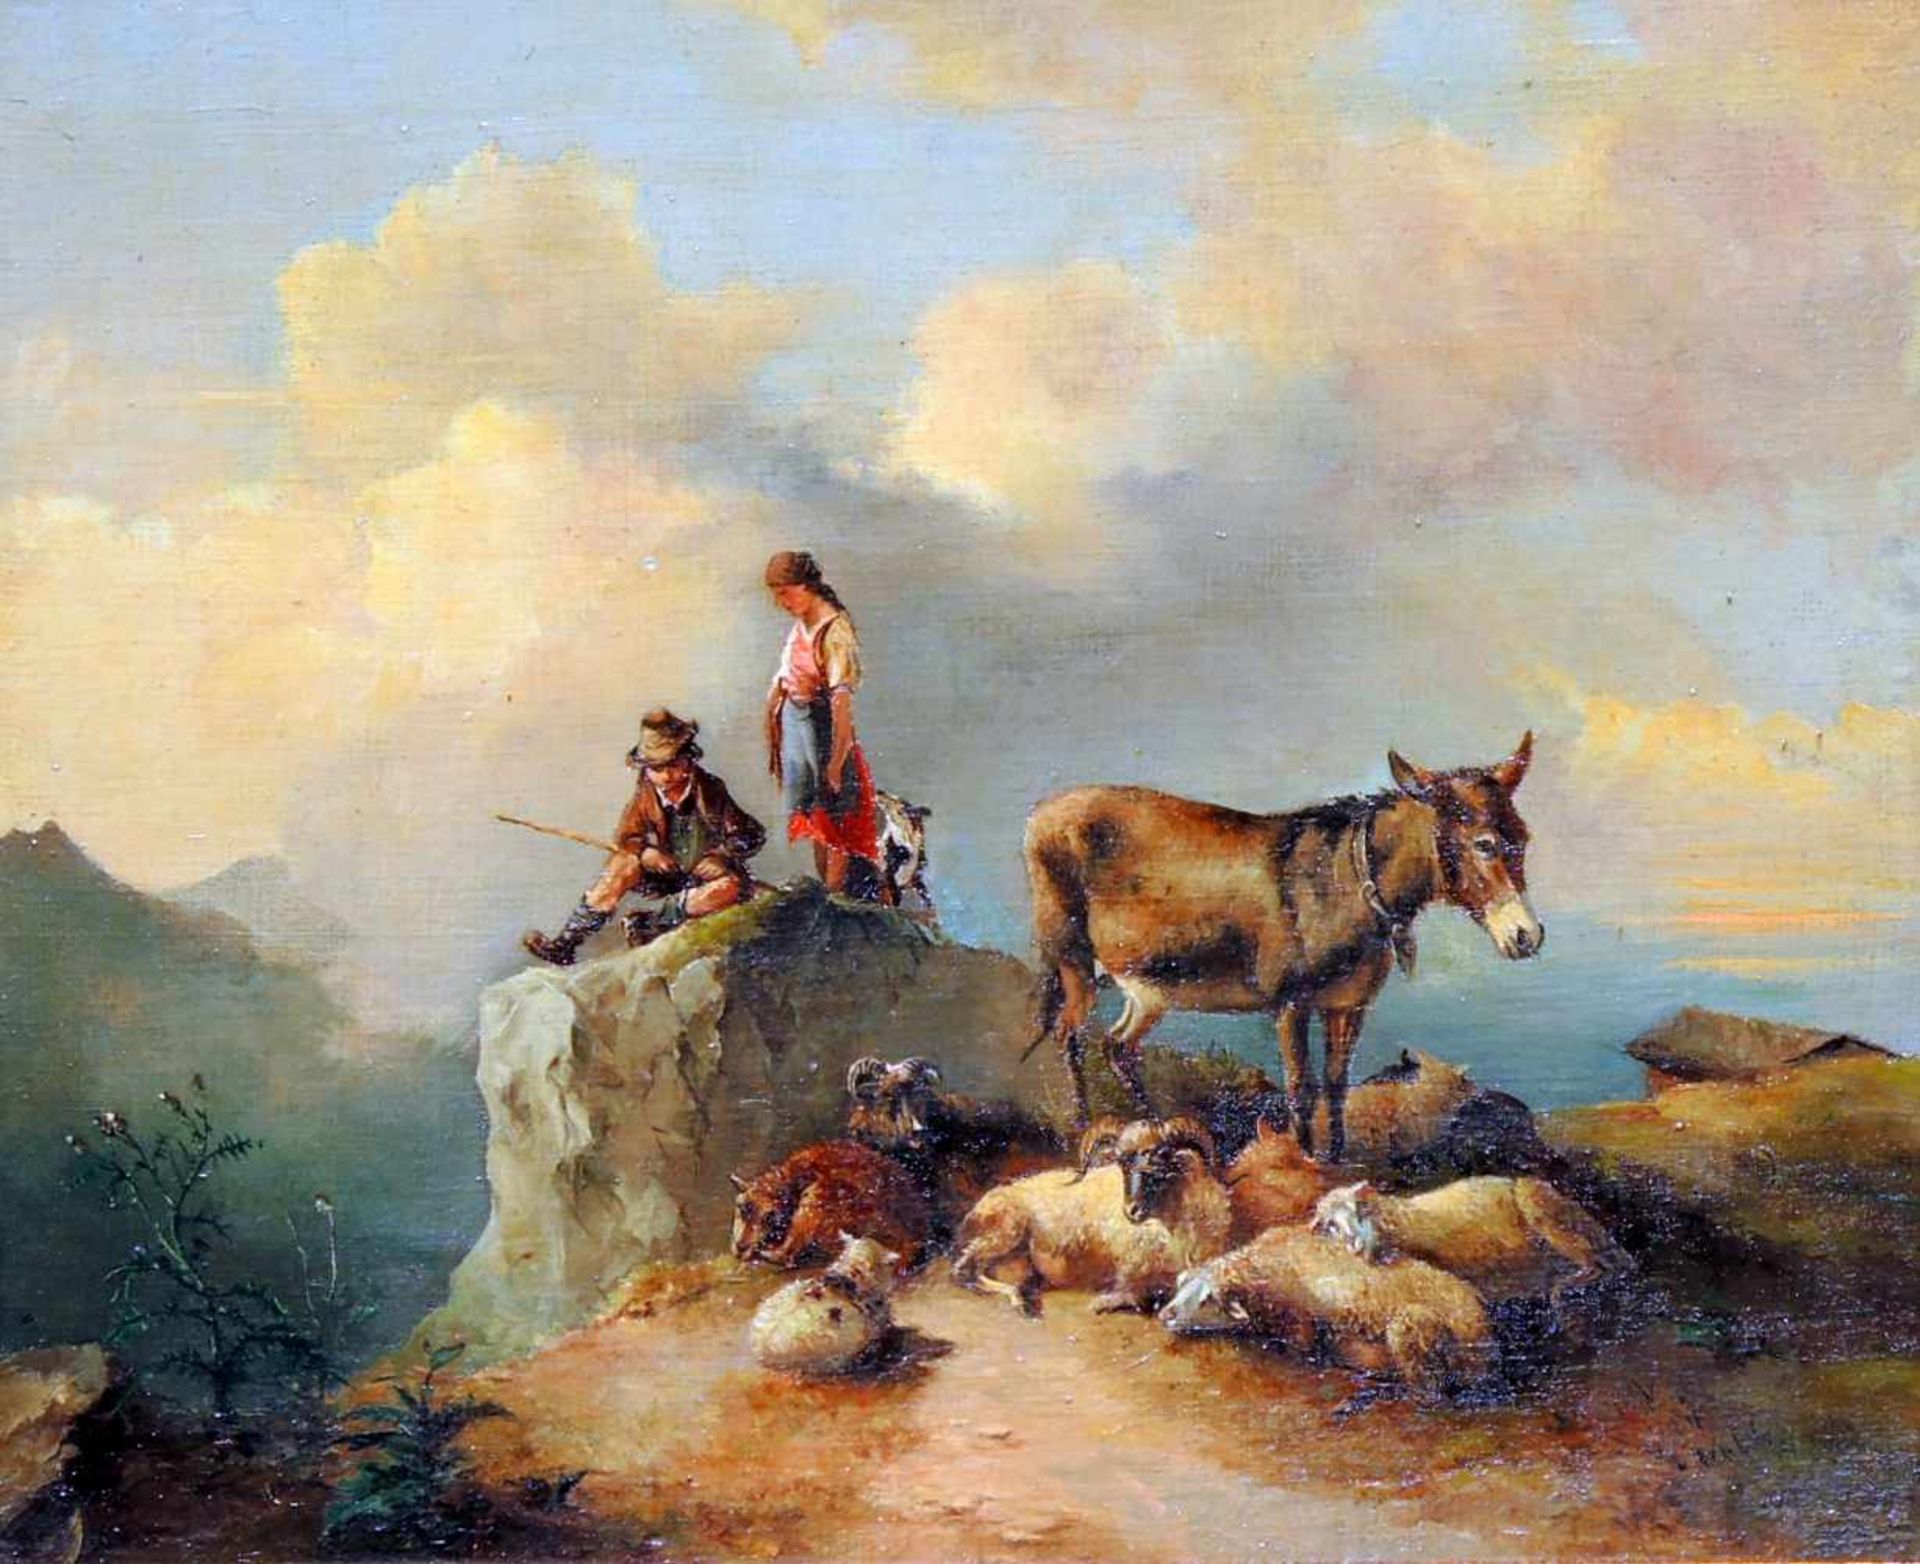 Gebirgspanorama mit SchäferfamilieÖl/Holz. Eine Schäferfamilie samt Herde und Esel rastet auf